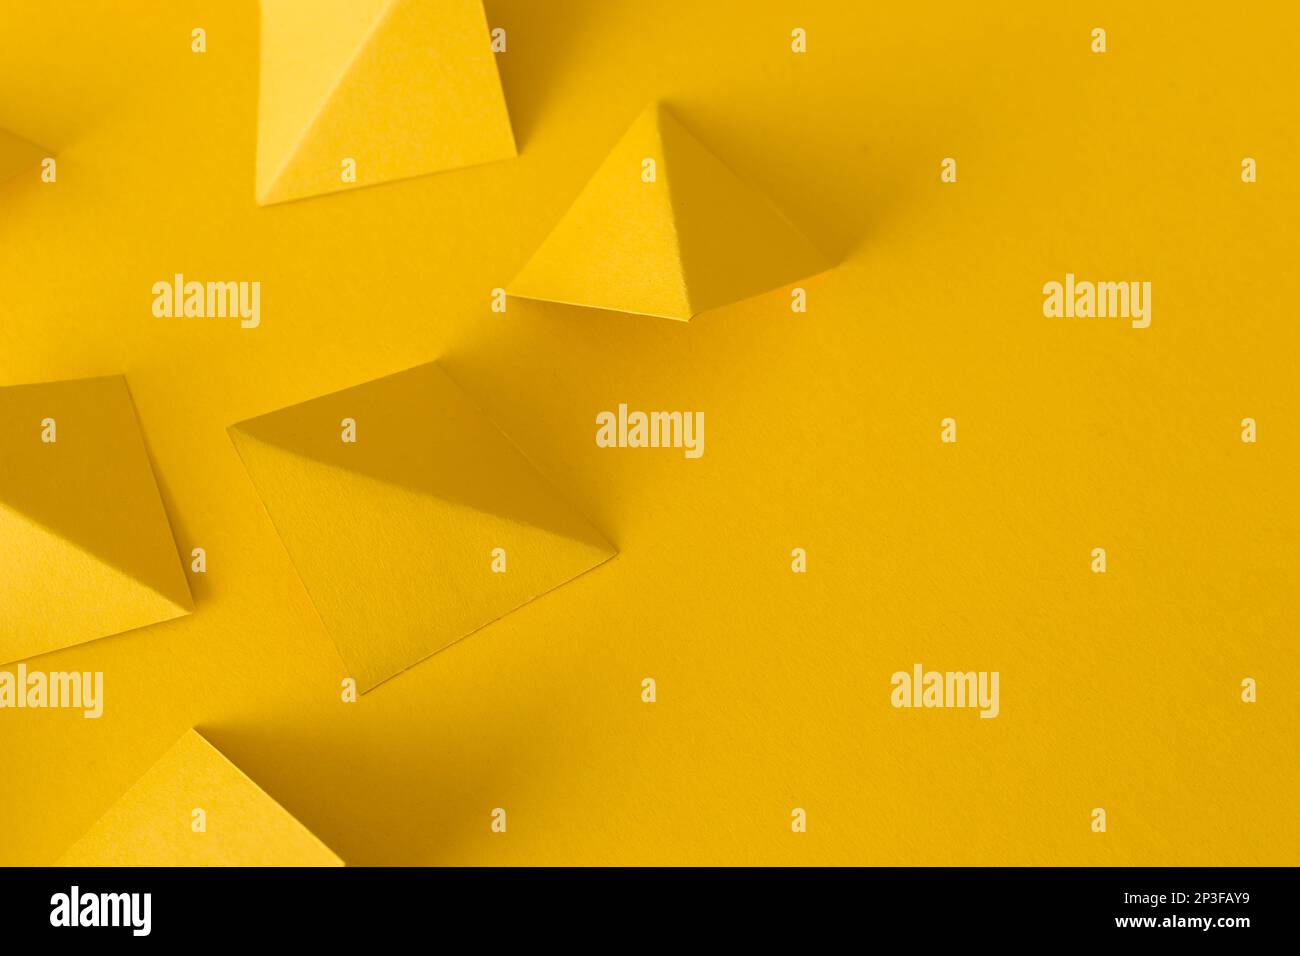 Arrière-plan jaune abstrait avec formes géométriques de triangle Banque D'Images